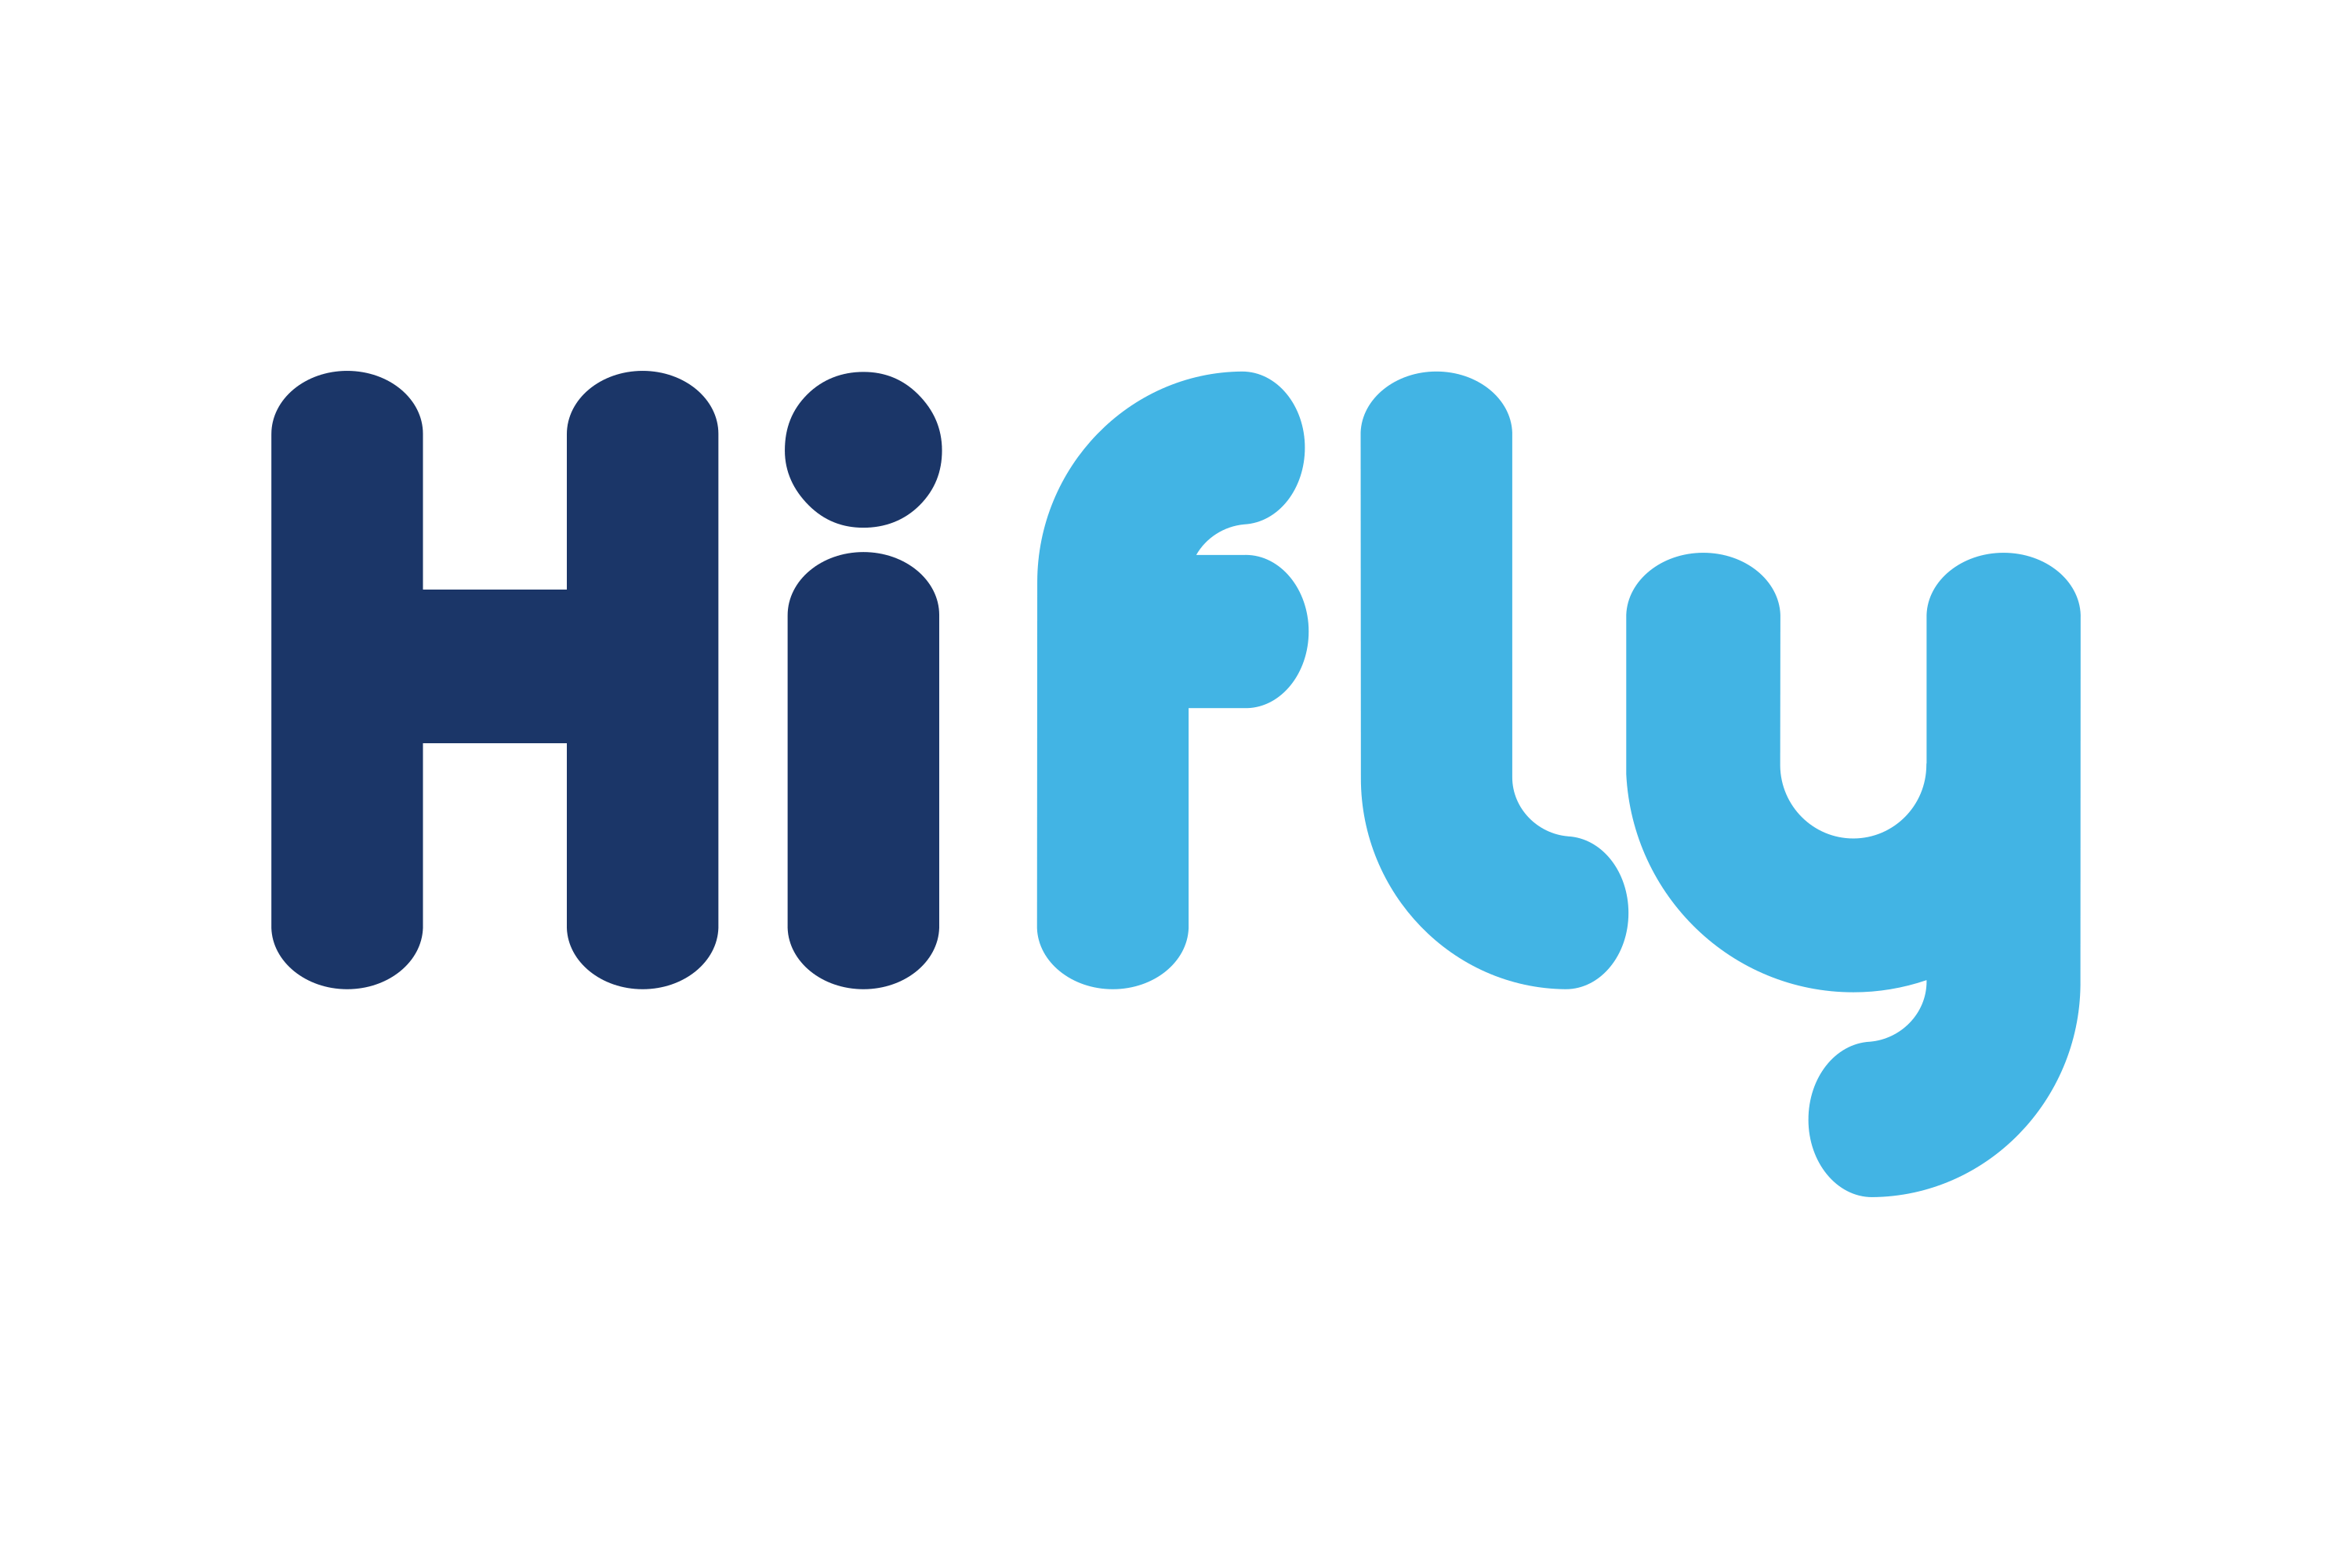 Download Hi Fly Logo in SVG Vector or PNG File Format - Logo.wine